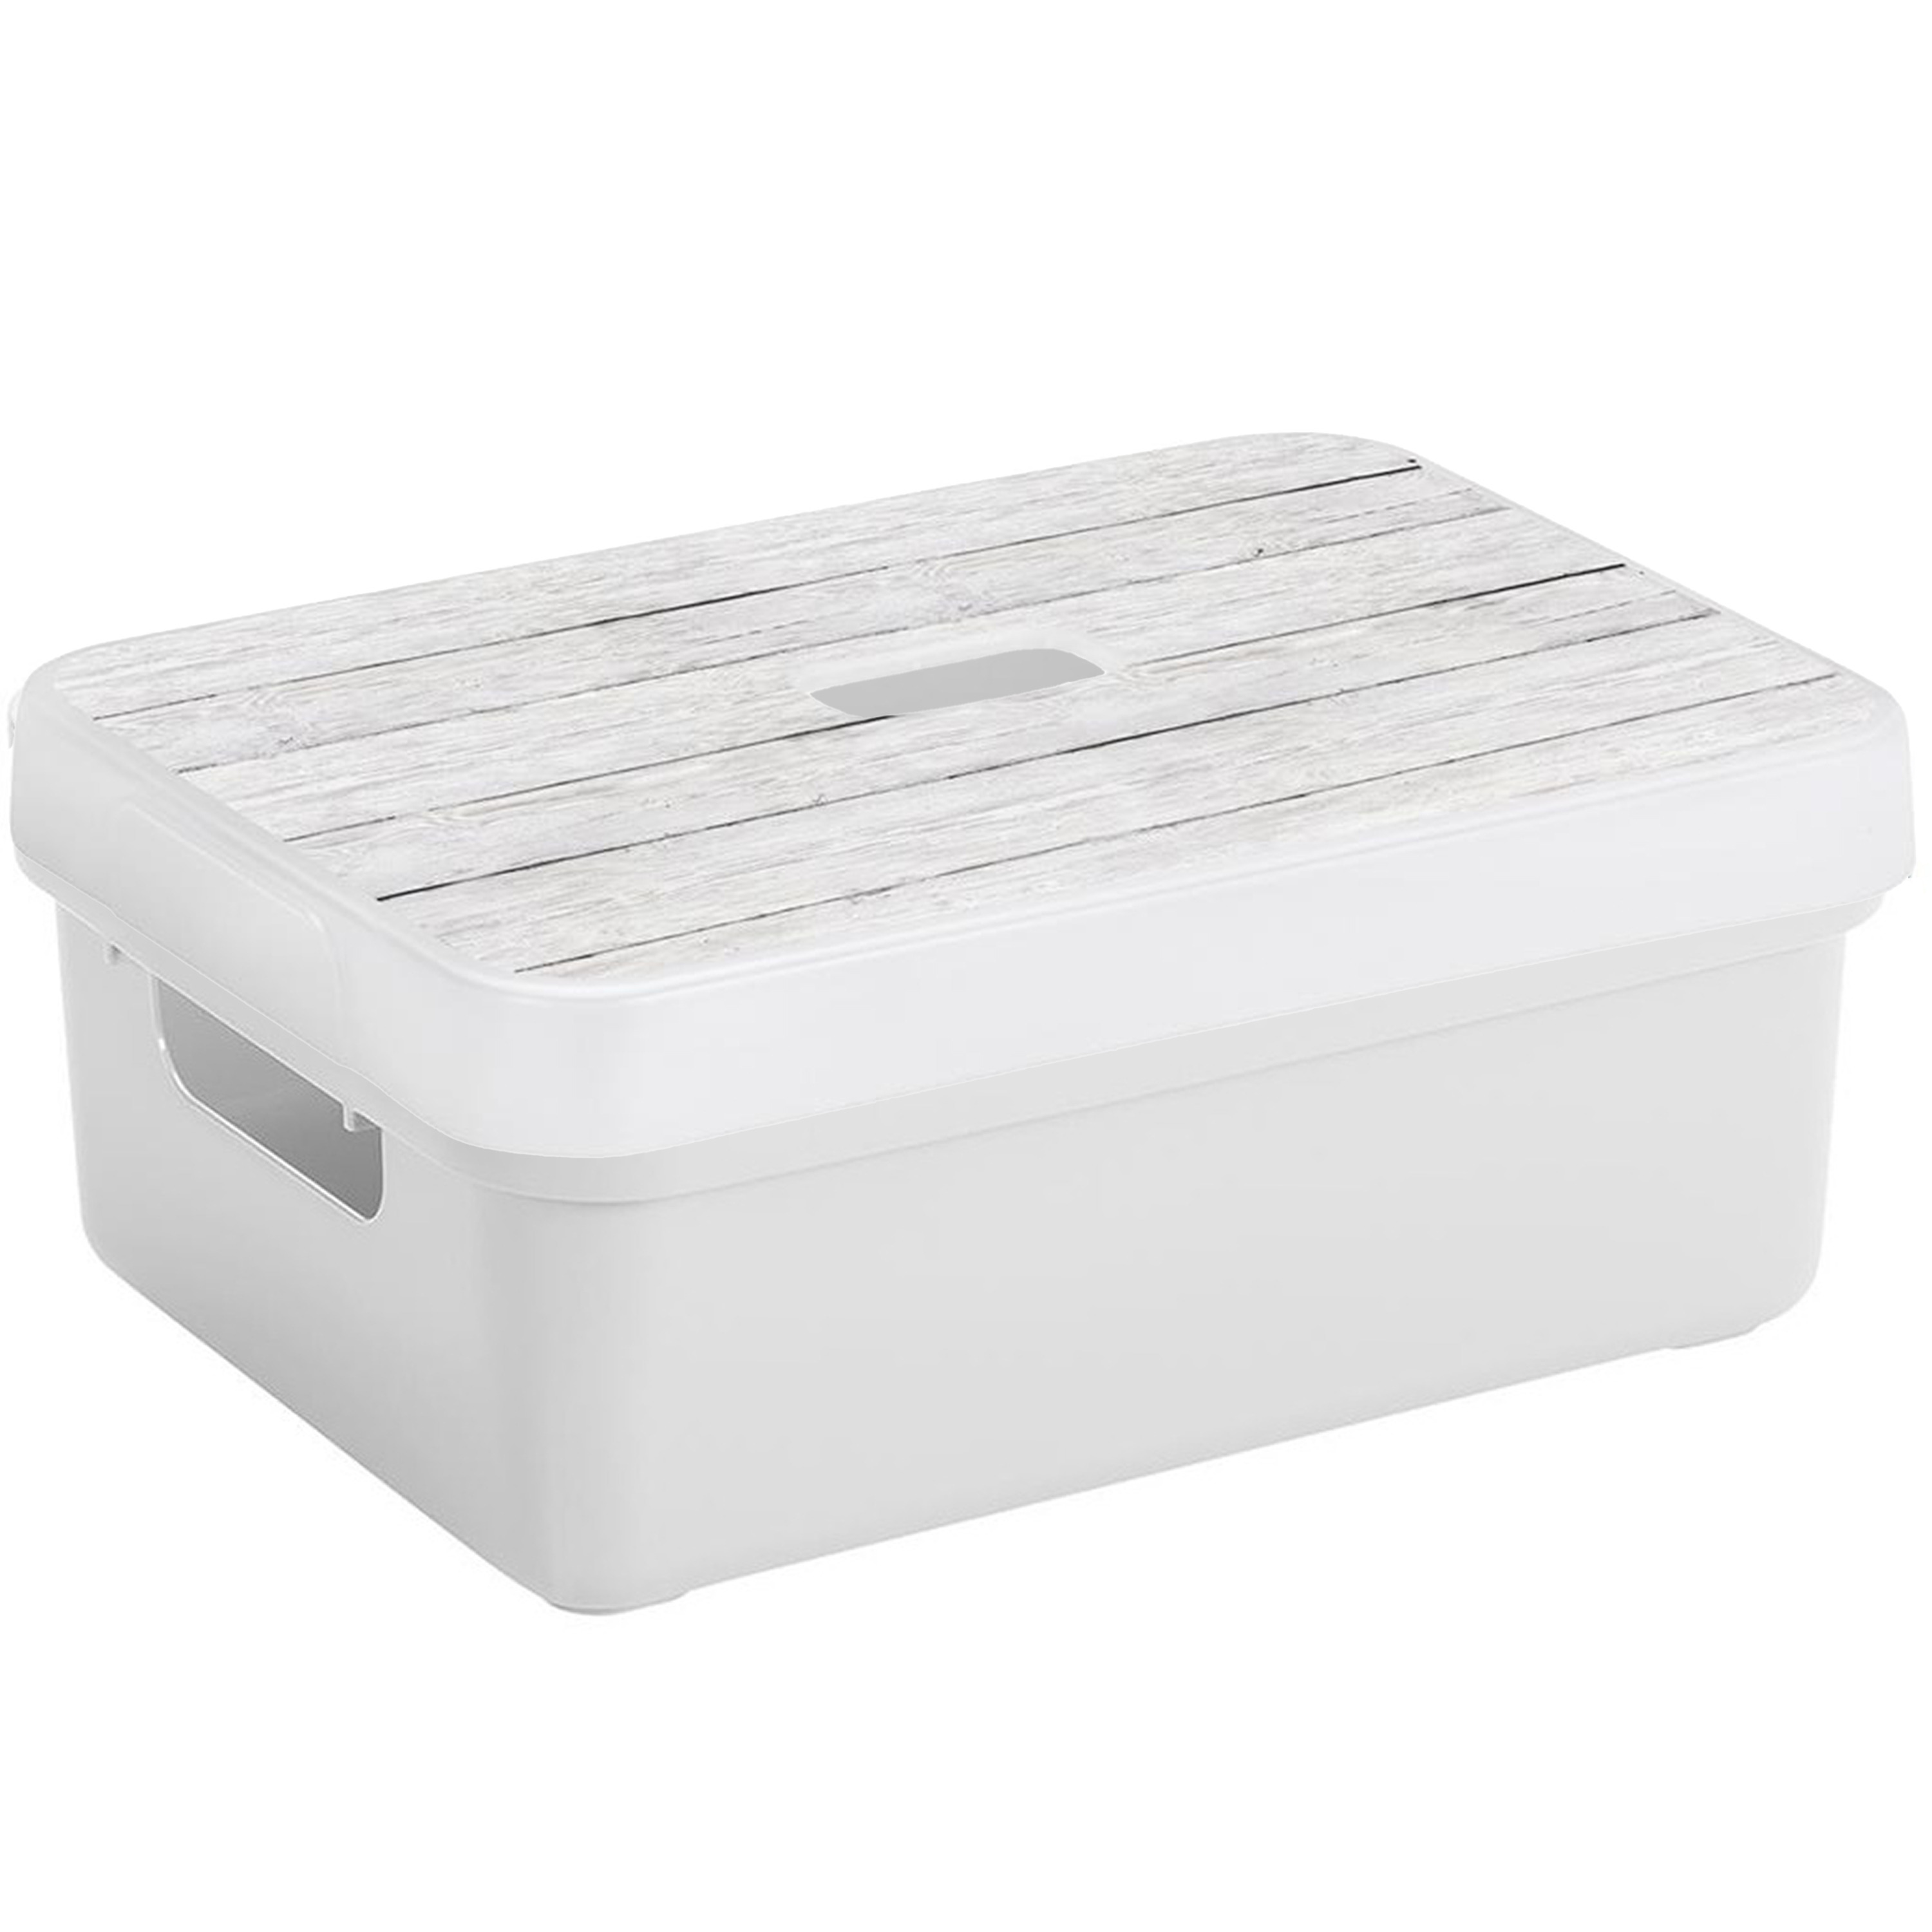 Sunware Opbergbox-mand wit 9 liter met deksel hout kleur